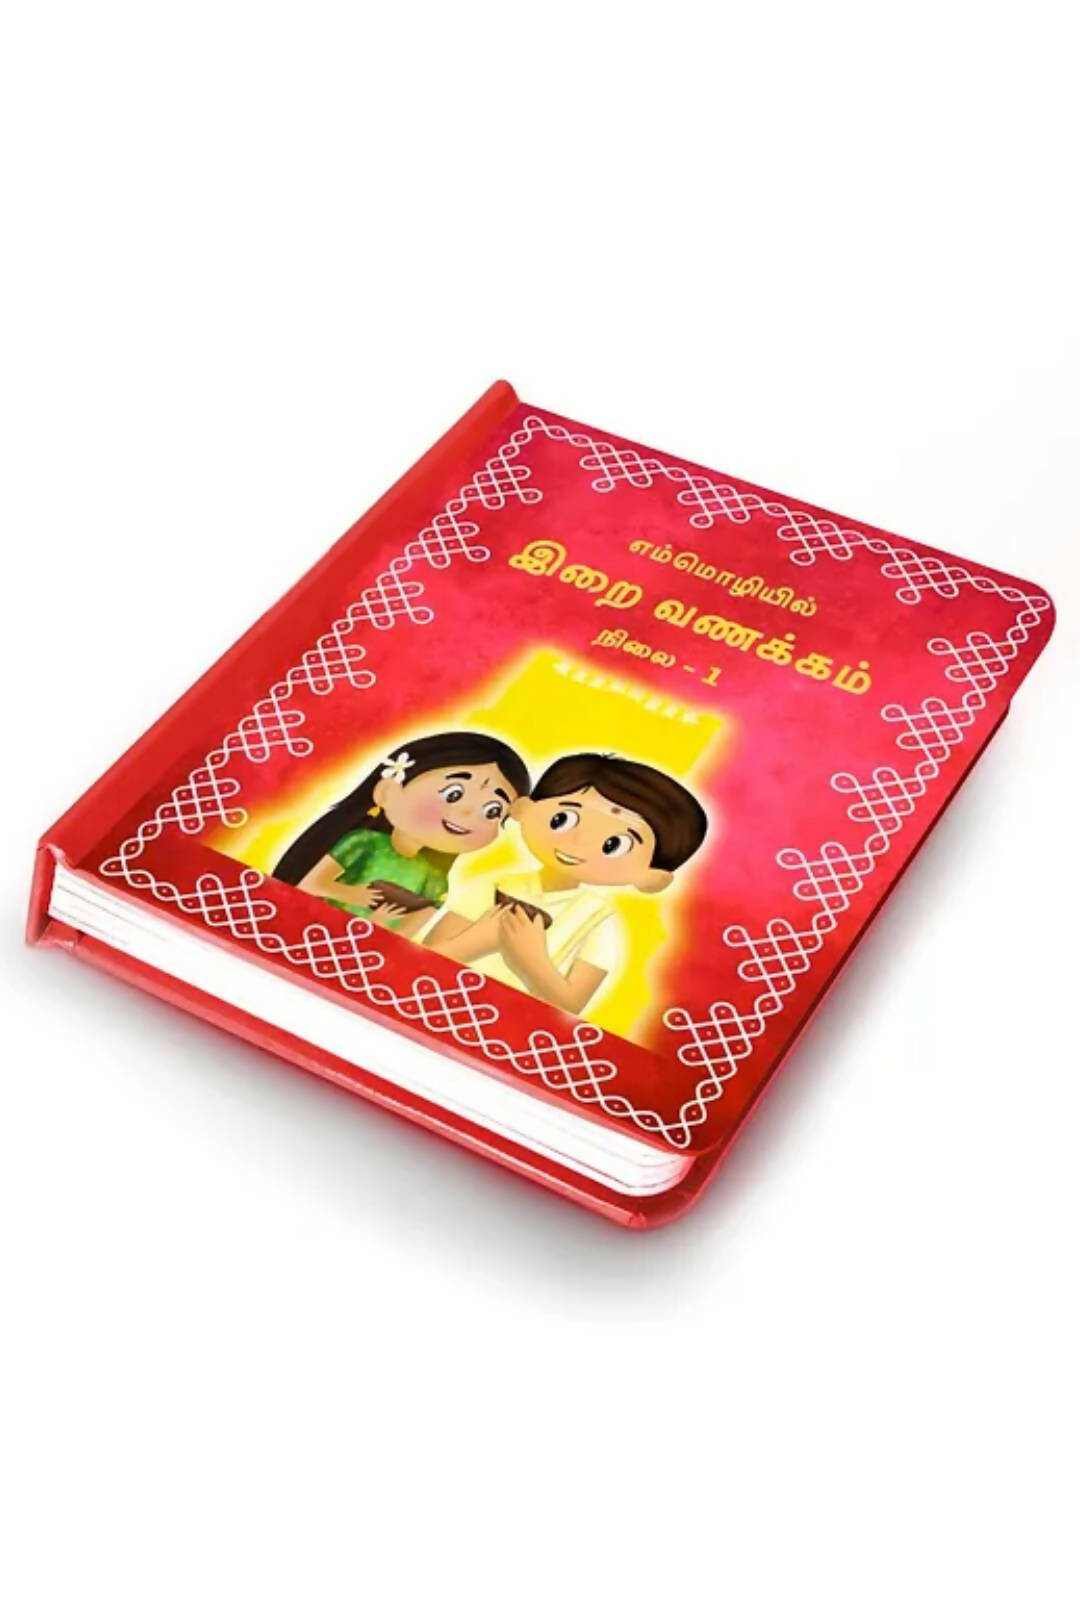 இறை வணக்கம்நிலை - 1 (Tamil Slokas Board Book) - 1